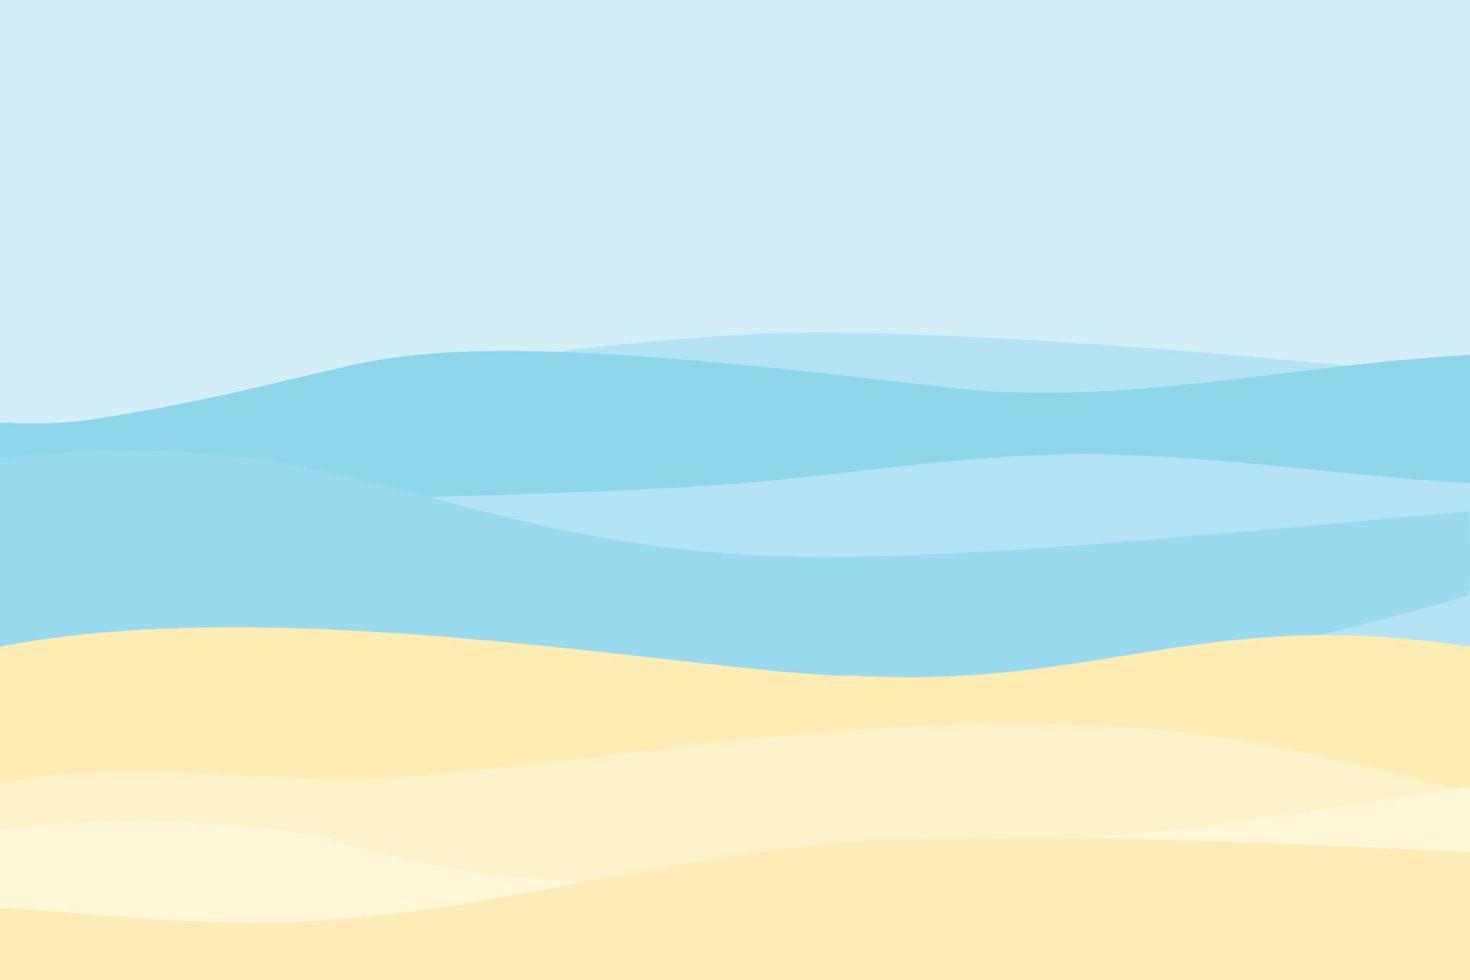 playa de arena de estilo de dibujos animados de vector. mar. resaca del océano vector